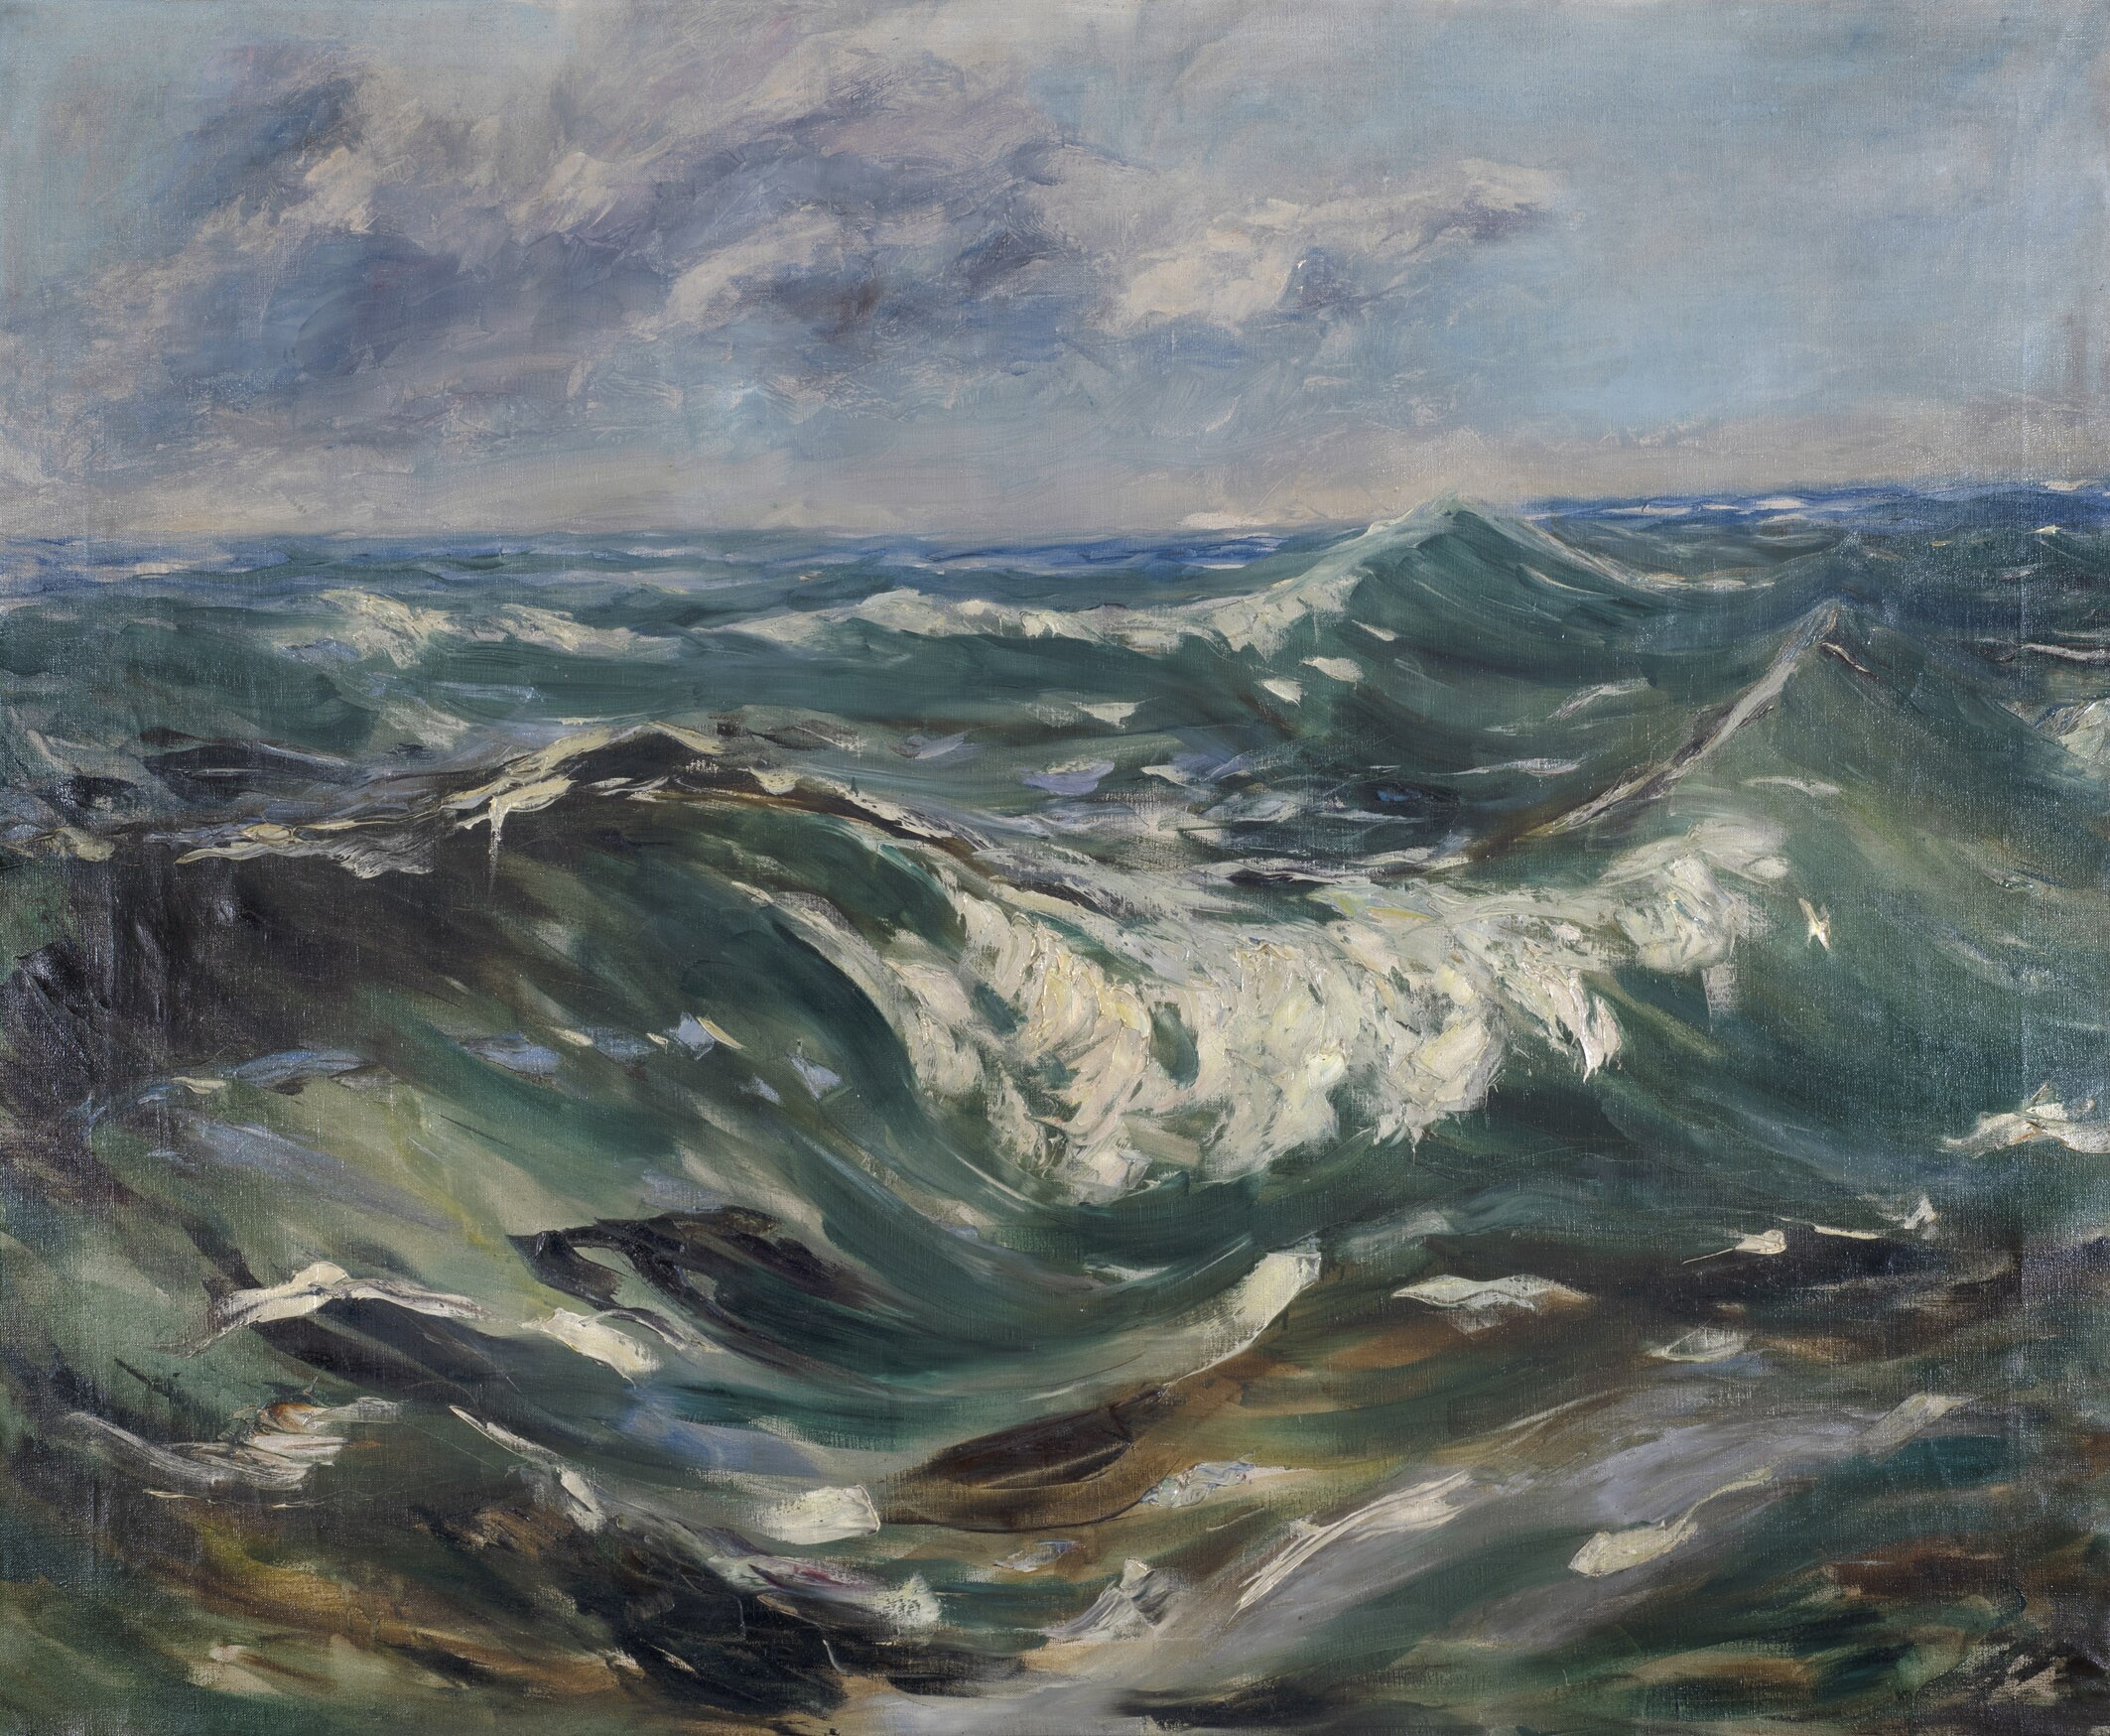 Welle - tobende Meereswogen im Sturm (Potsdam Museum - Forum für Kunst und Geschichte CC BY-NC-SA)